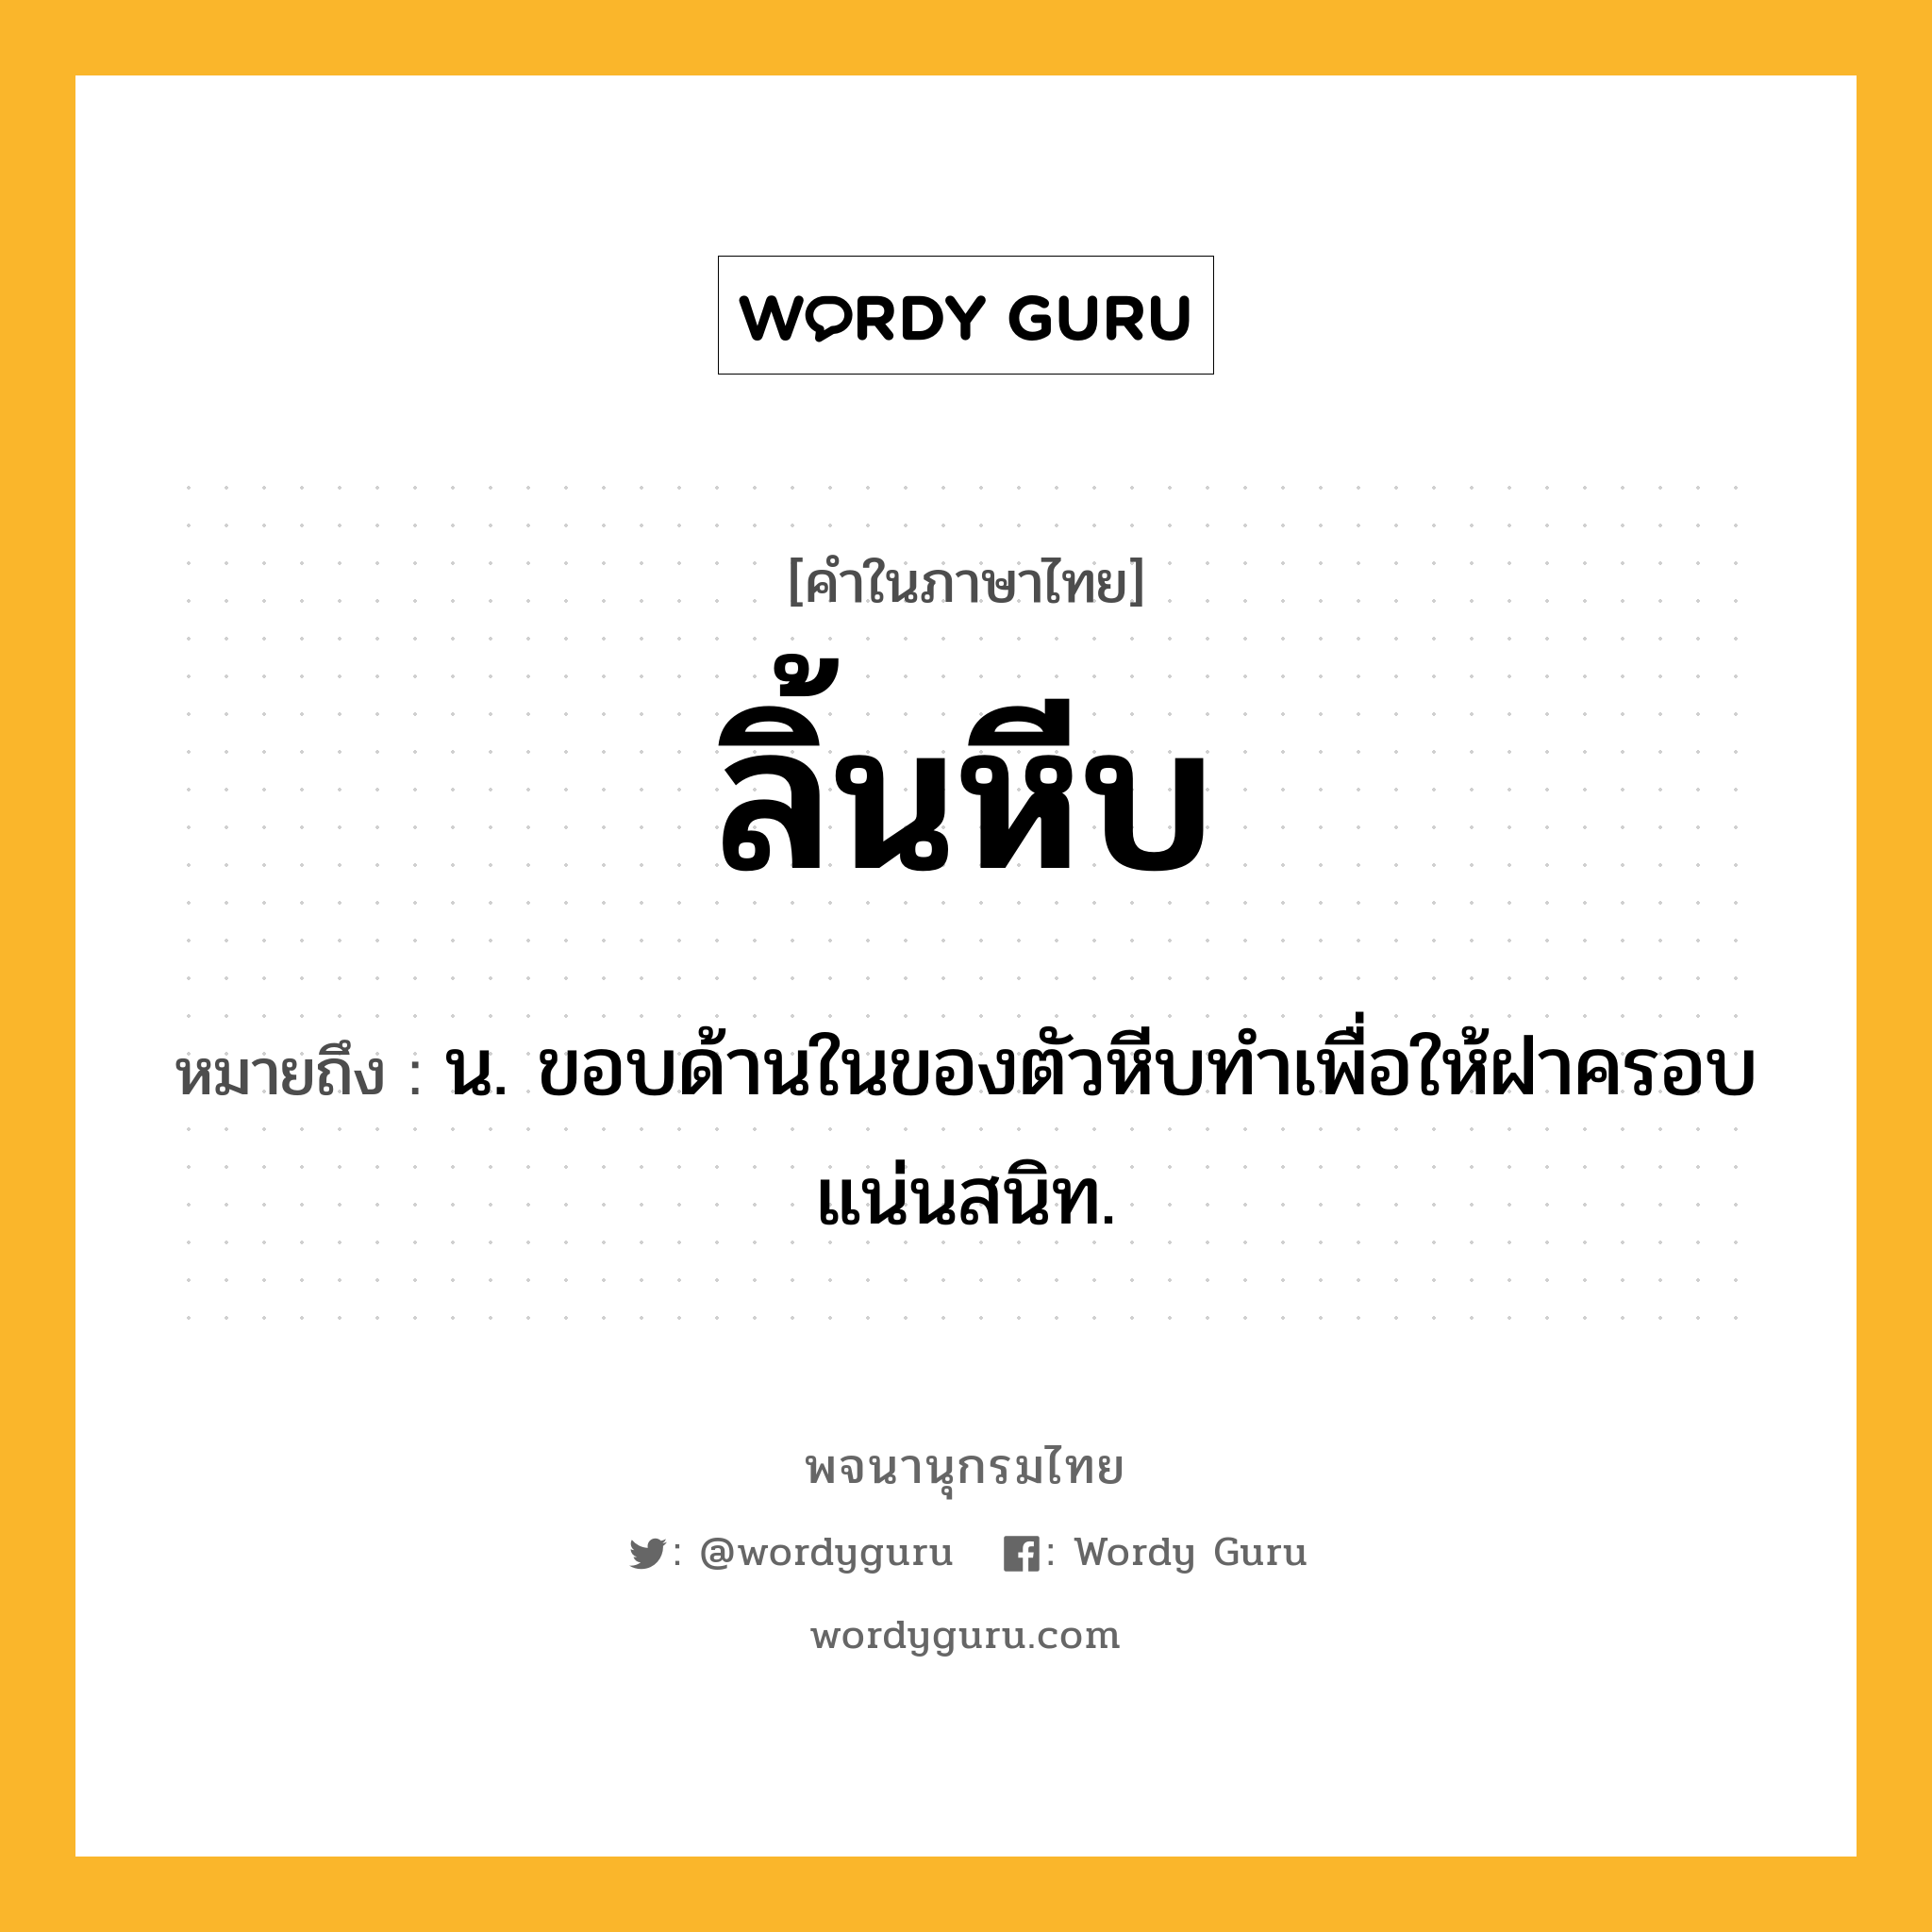 ลิ้นหีบ หมายถึงอะไร?, คำในภาษาไทย ลิ้นหีบ หมายถึง น. ขอบด้านในของตัวหีบทำเพื่อให้ฝาครอบแน่นสนิท.